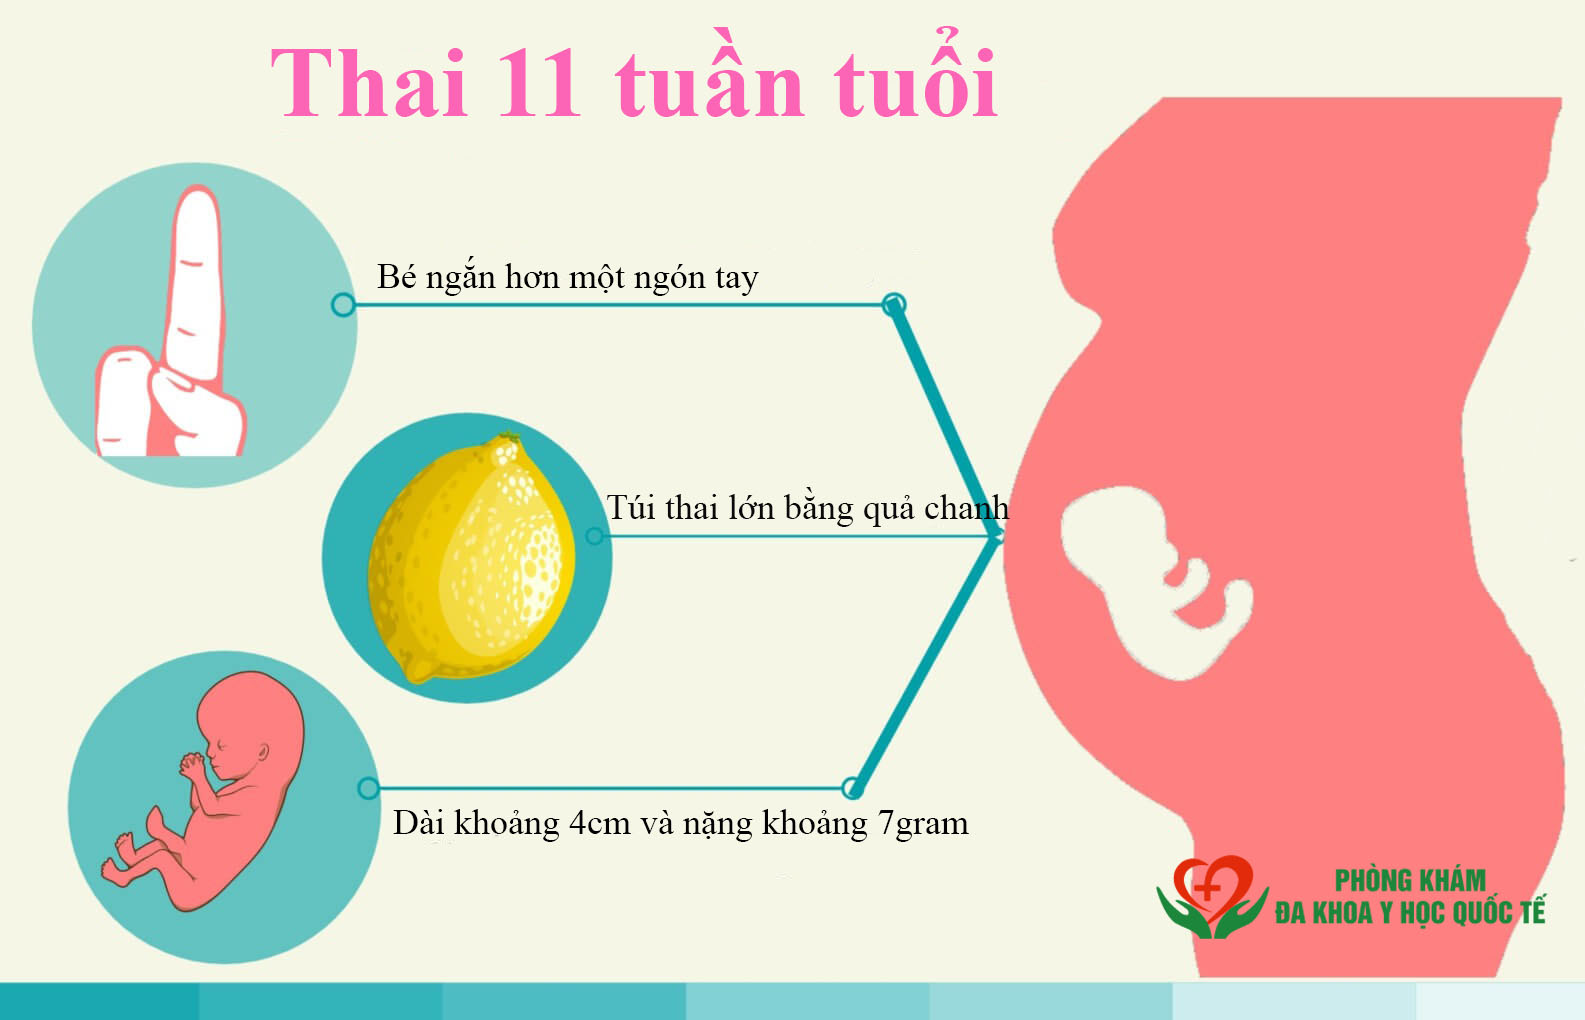 Thai 11 tuần tuổi phát triển như thế nào